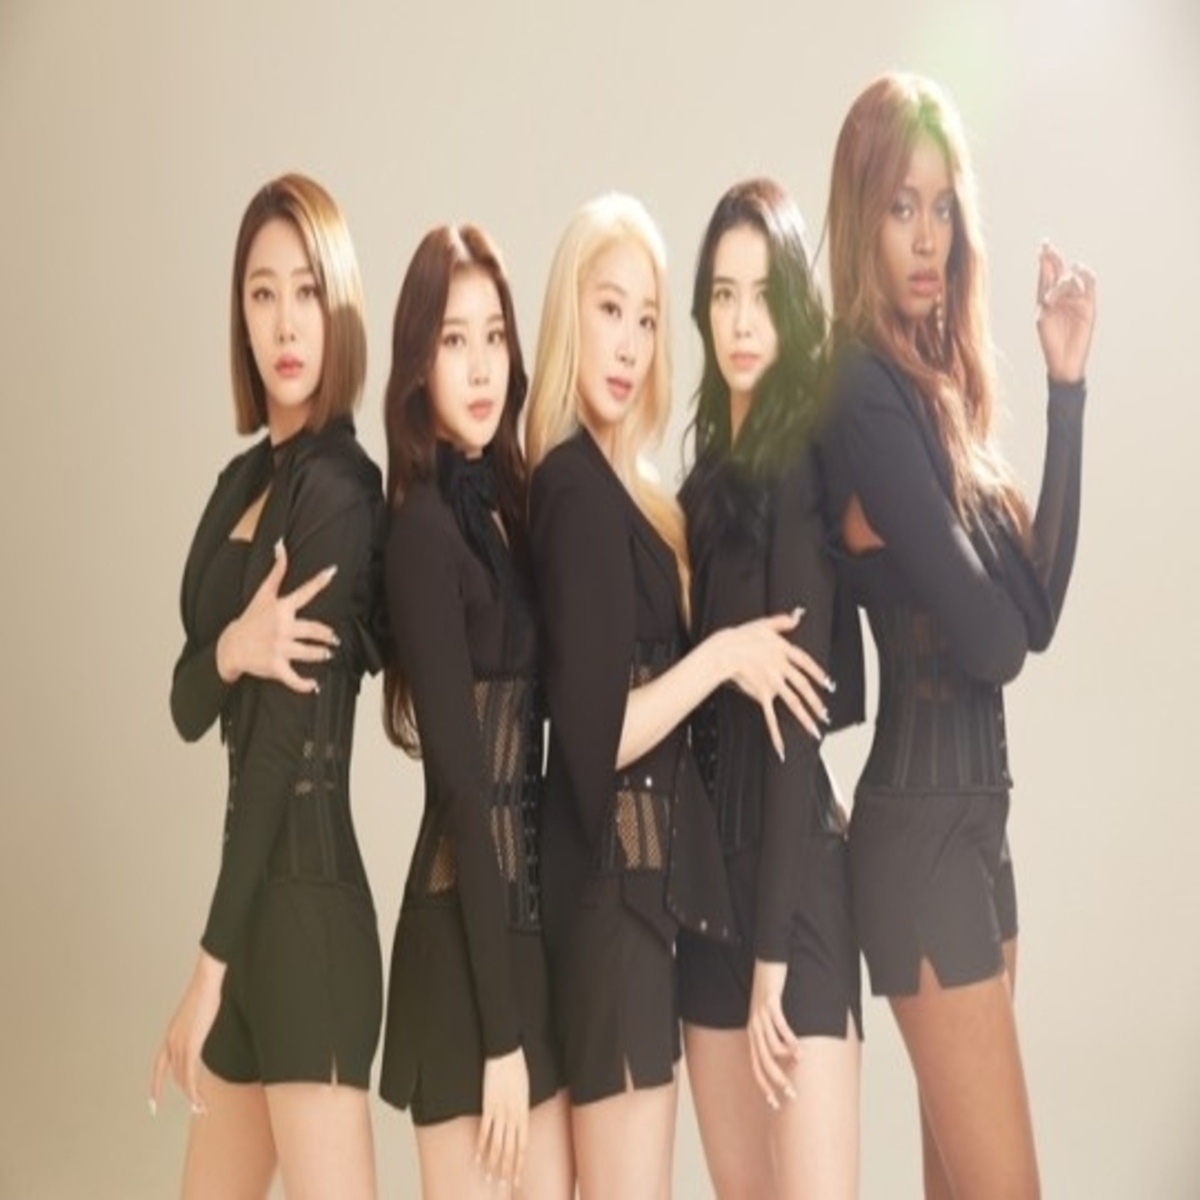 6ヶ国語が可能 多国籍ガールズグループblackswan 10月16日にシングル Tonight でデビュー Kstyle